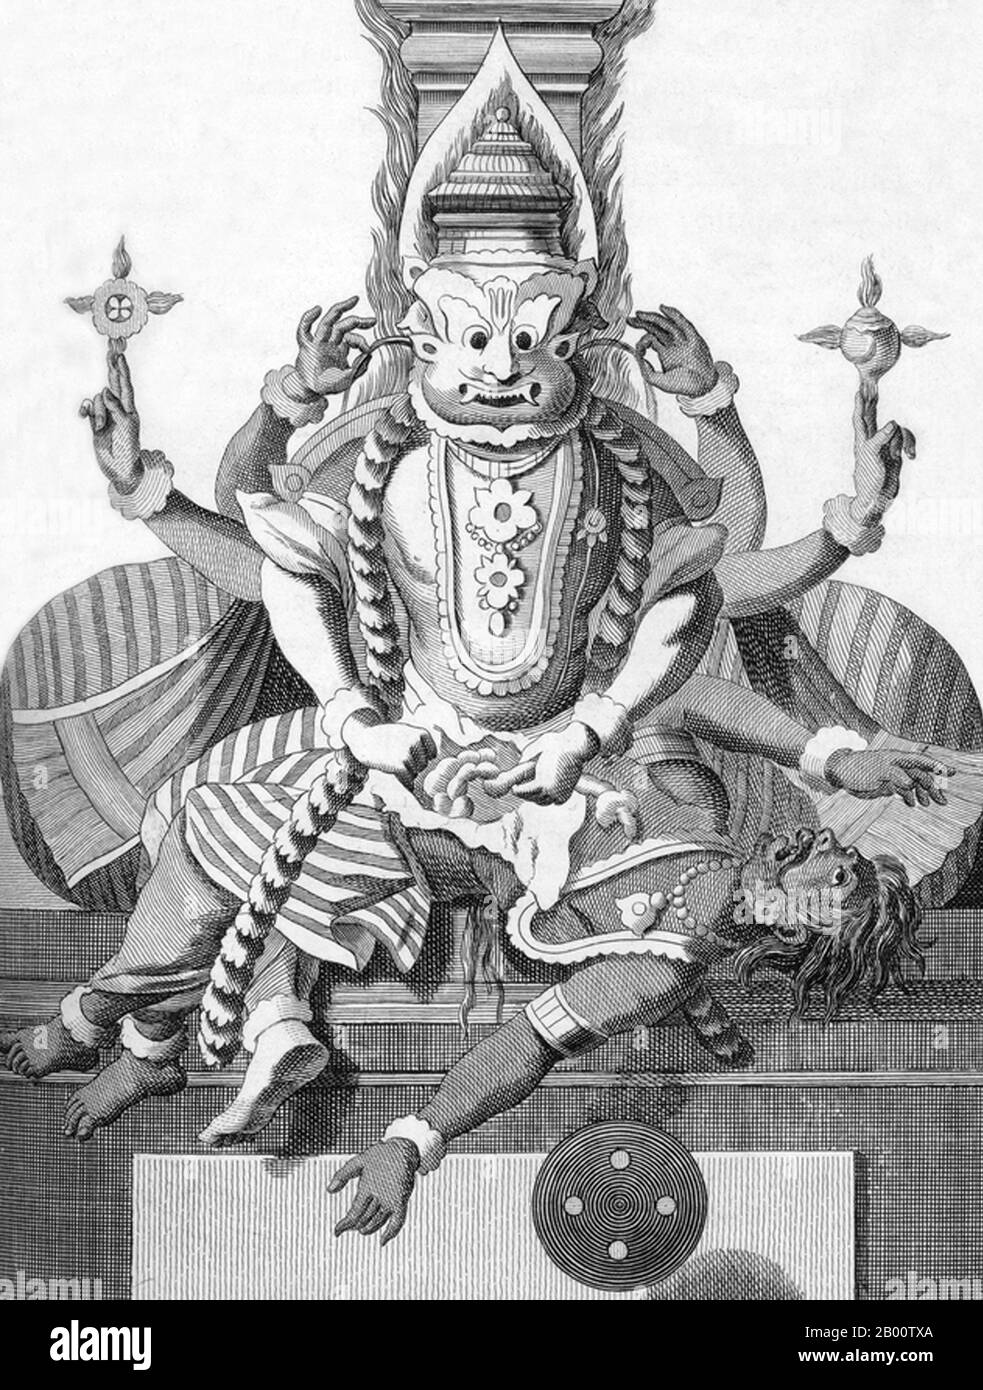 Inde: 'Quatrième Avatar (Incarnation) de Vishnu comme Narasimha, l'homme du Lion'. Illustration de Pierre Sonnerat (1748-1814), 1782. Pierre Sonnerat (1748-1814) est un naturaliste et explorateur français qui a effectué plusieurs voyages en Asie du Sud-est entre 1769 et 1781. Il a publié ce compte-rendu en deux volumes de son voyage de 1774-81 en 1782. Le volume 1 traite exclusivement de l'Inde, dont la culture Sonnerat admirait beaucoup, et est particulièrement remarquable pour sa discussion élargie de la religion en Inde, l'hindouisme en particulier. Le livre est illustré avec des gravures basées sur les dessins de Sonnerat. Banque D'Images